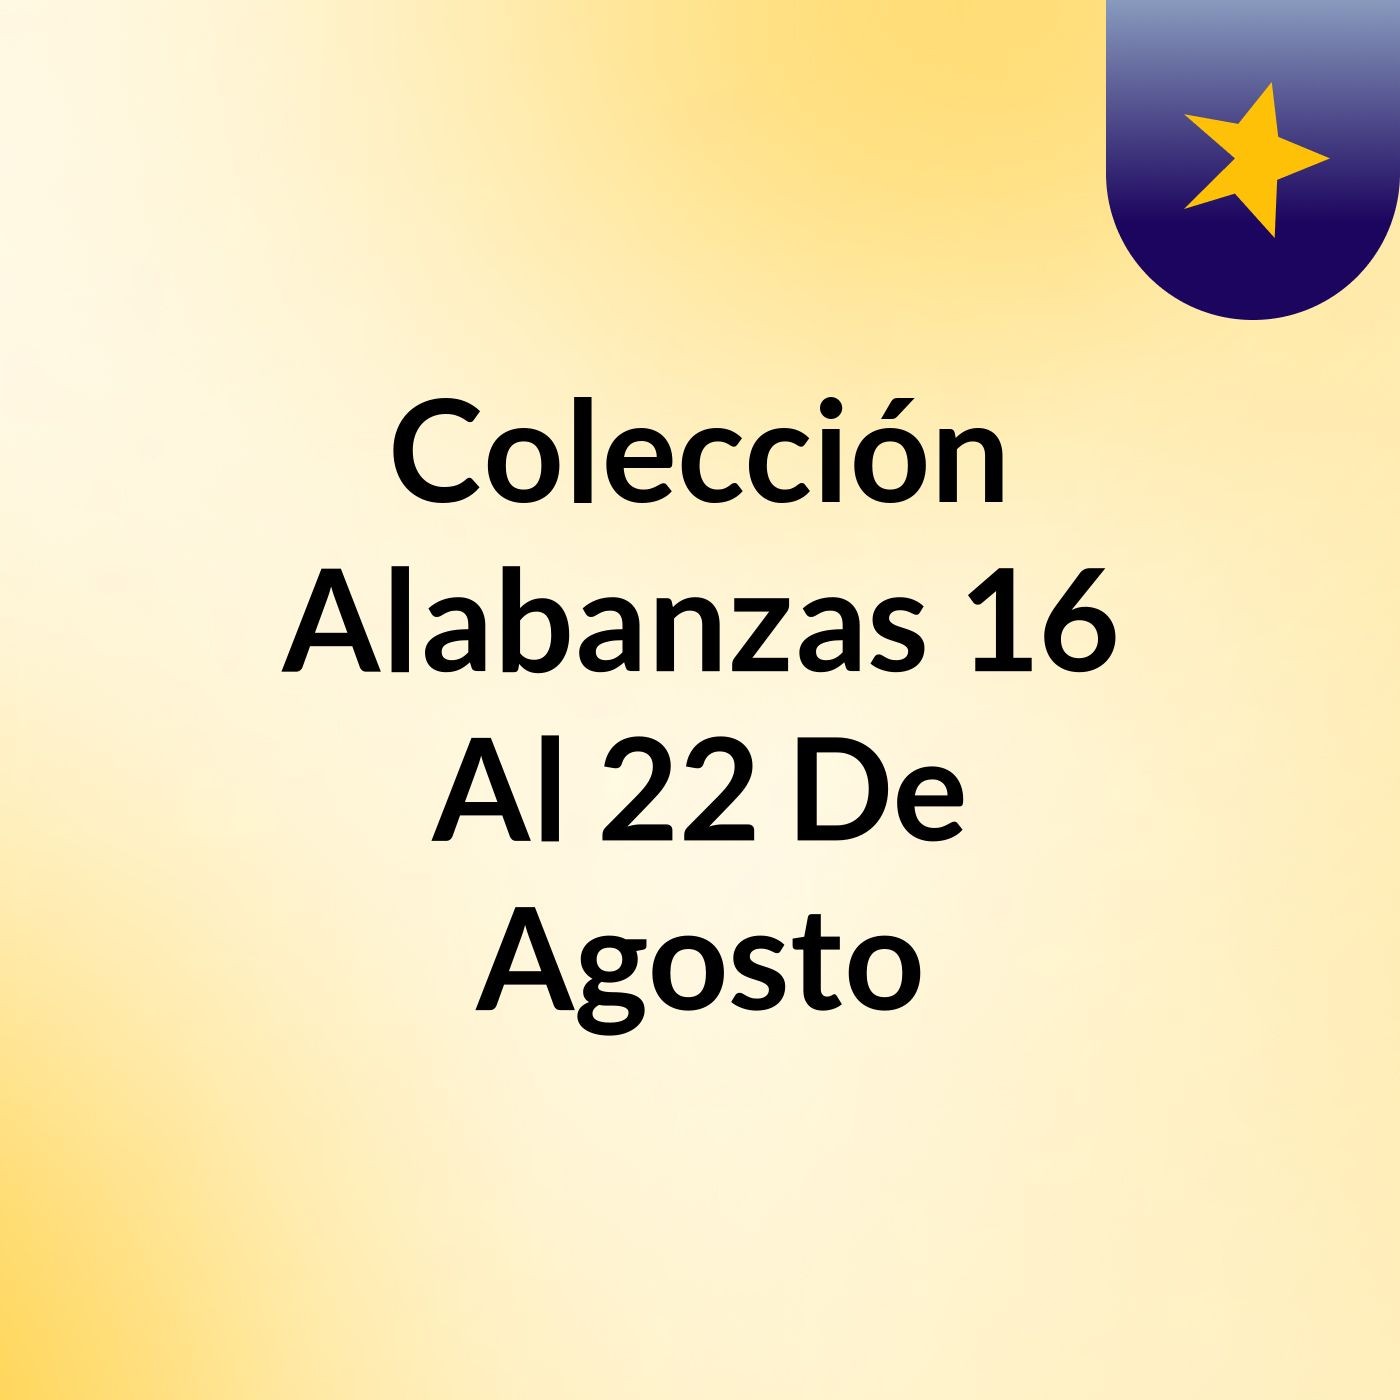 Colección Alabanzas 16 Al 22 De Agosto